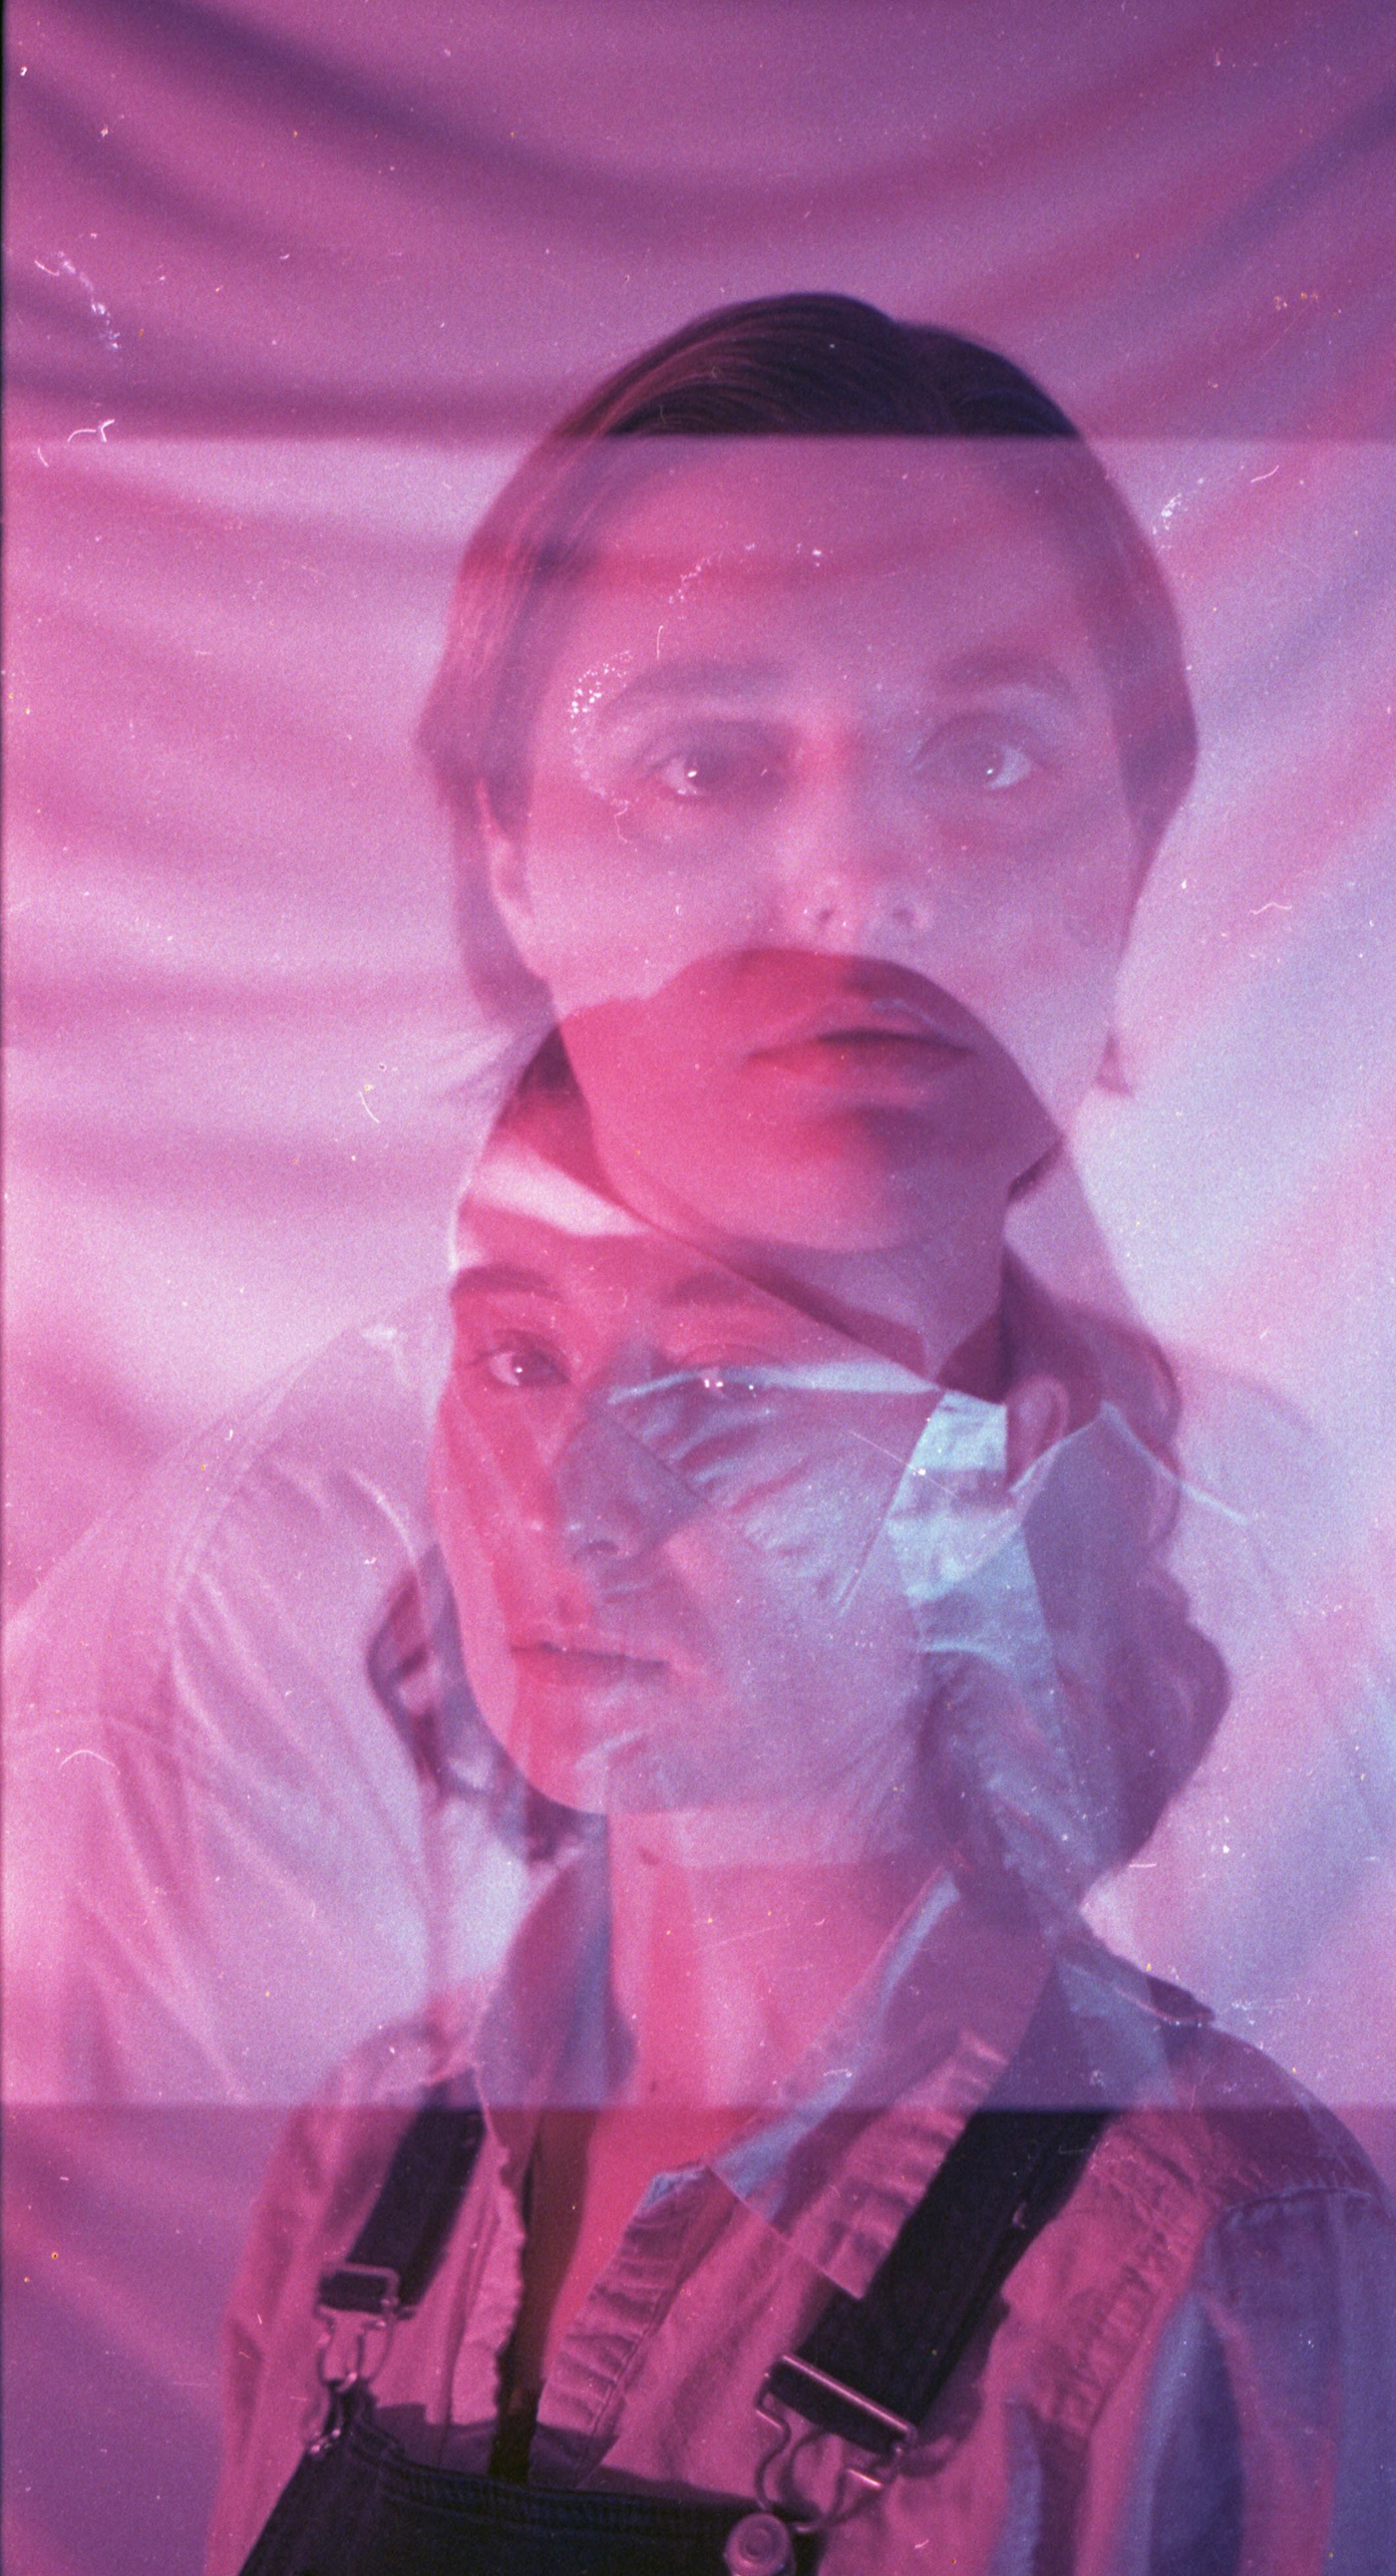 35mm doubleexposition euphoria FilmPhotography queer